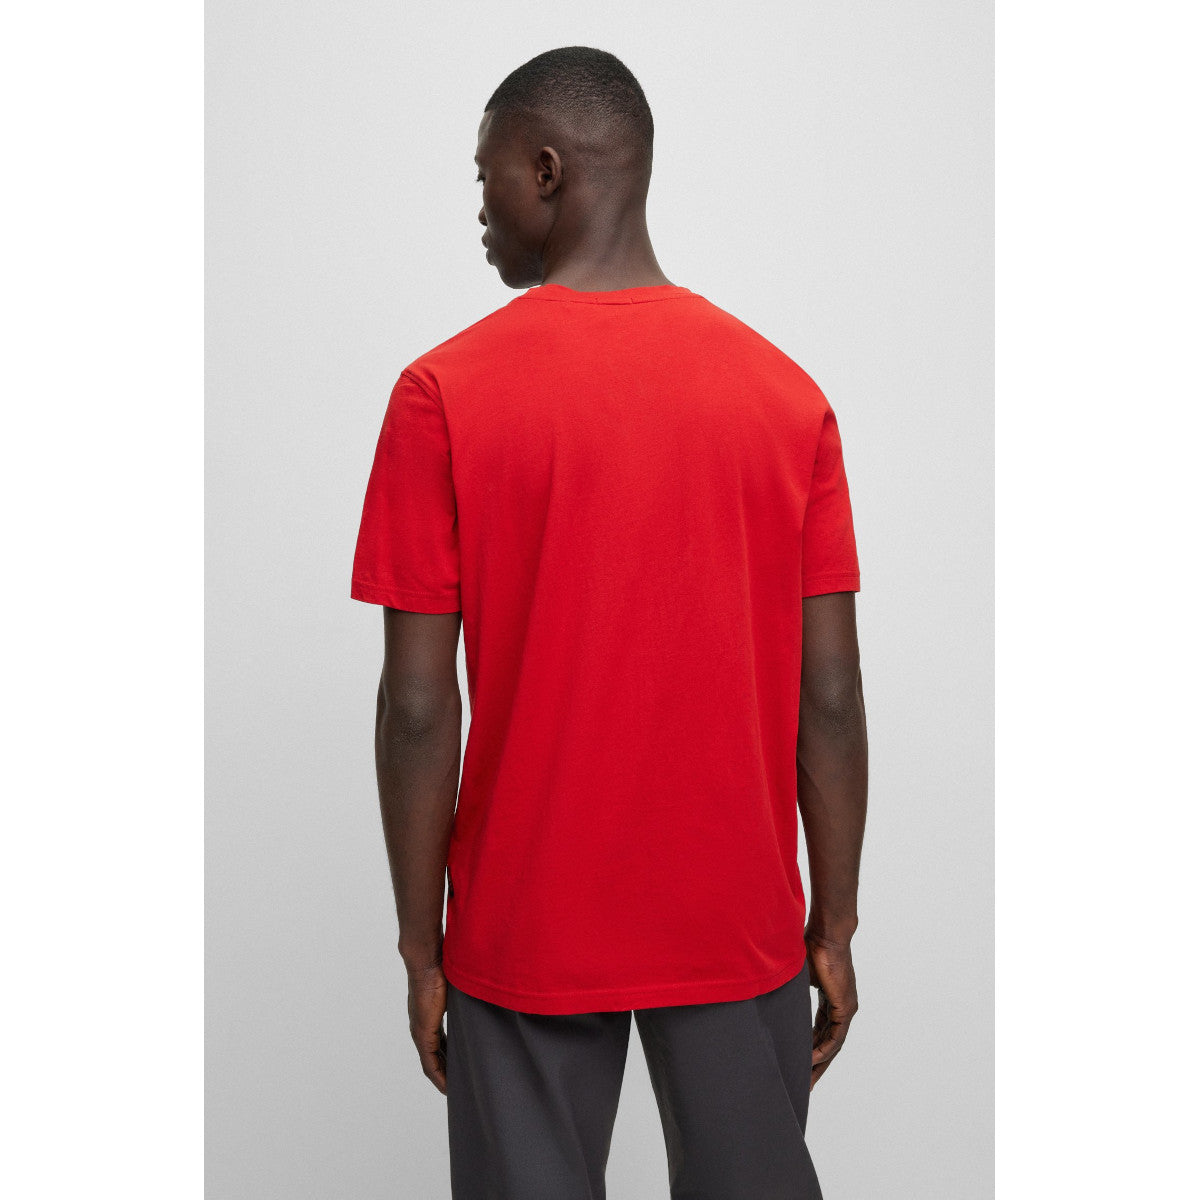 BOSS Orange TeeBOSSRete T-Shirt 624 Bright Red